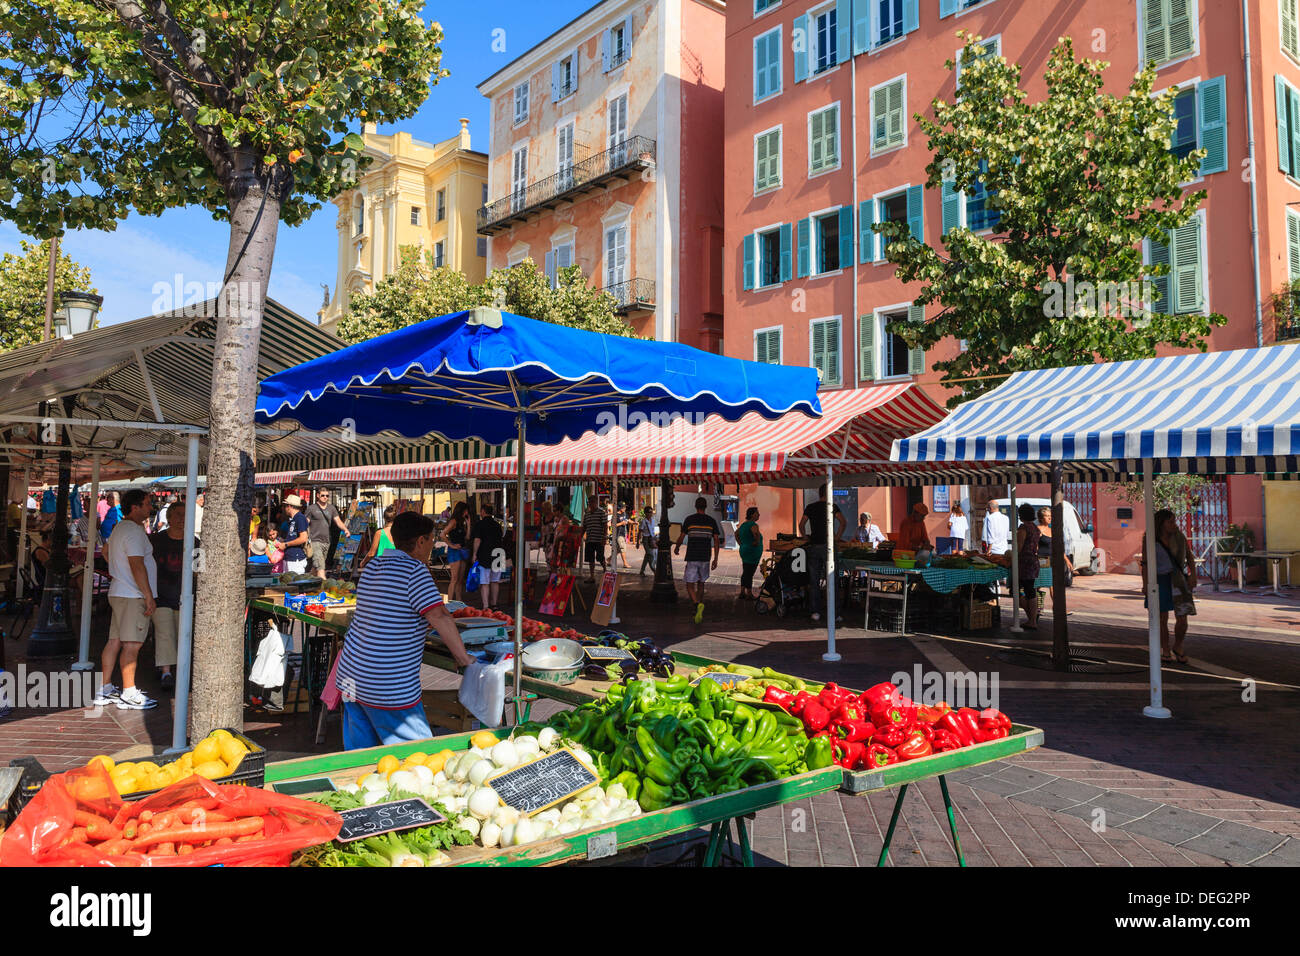 Obst und Gemüse Markt in Cours Saleya, Altstadt, Nizza, Alpes-Maritimes, Provence, Cote d ' Azur, Côte d ' Azur, Frankreich Stockfoto